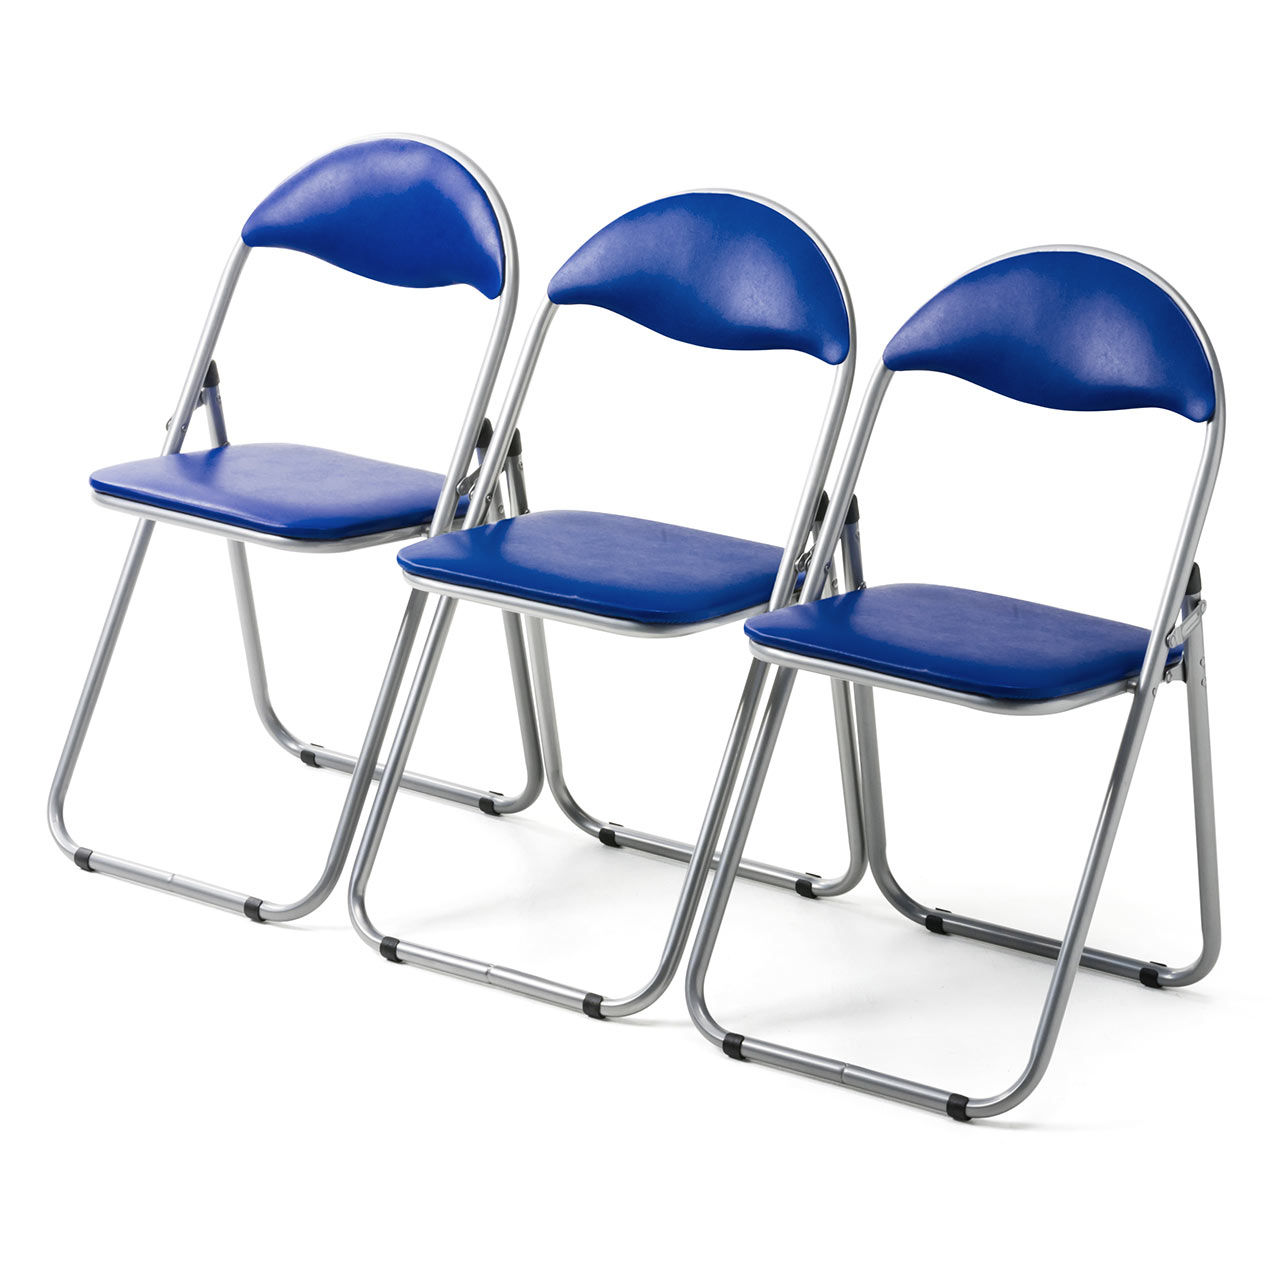 パイプ椅子（折りたたみイス・スチールフレーム・3脚セット・ブルー 